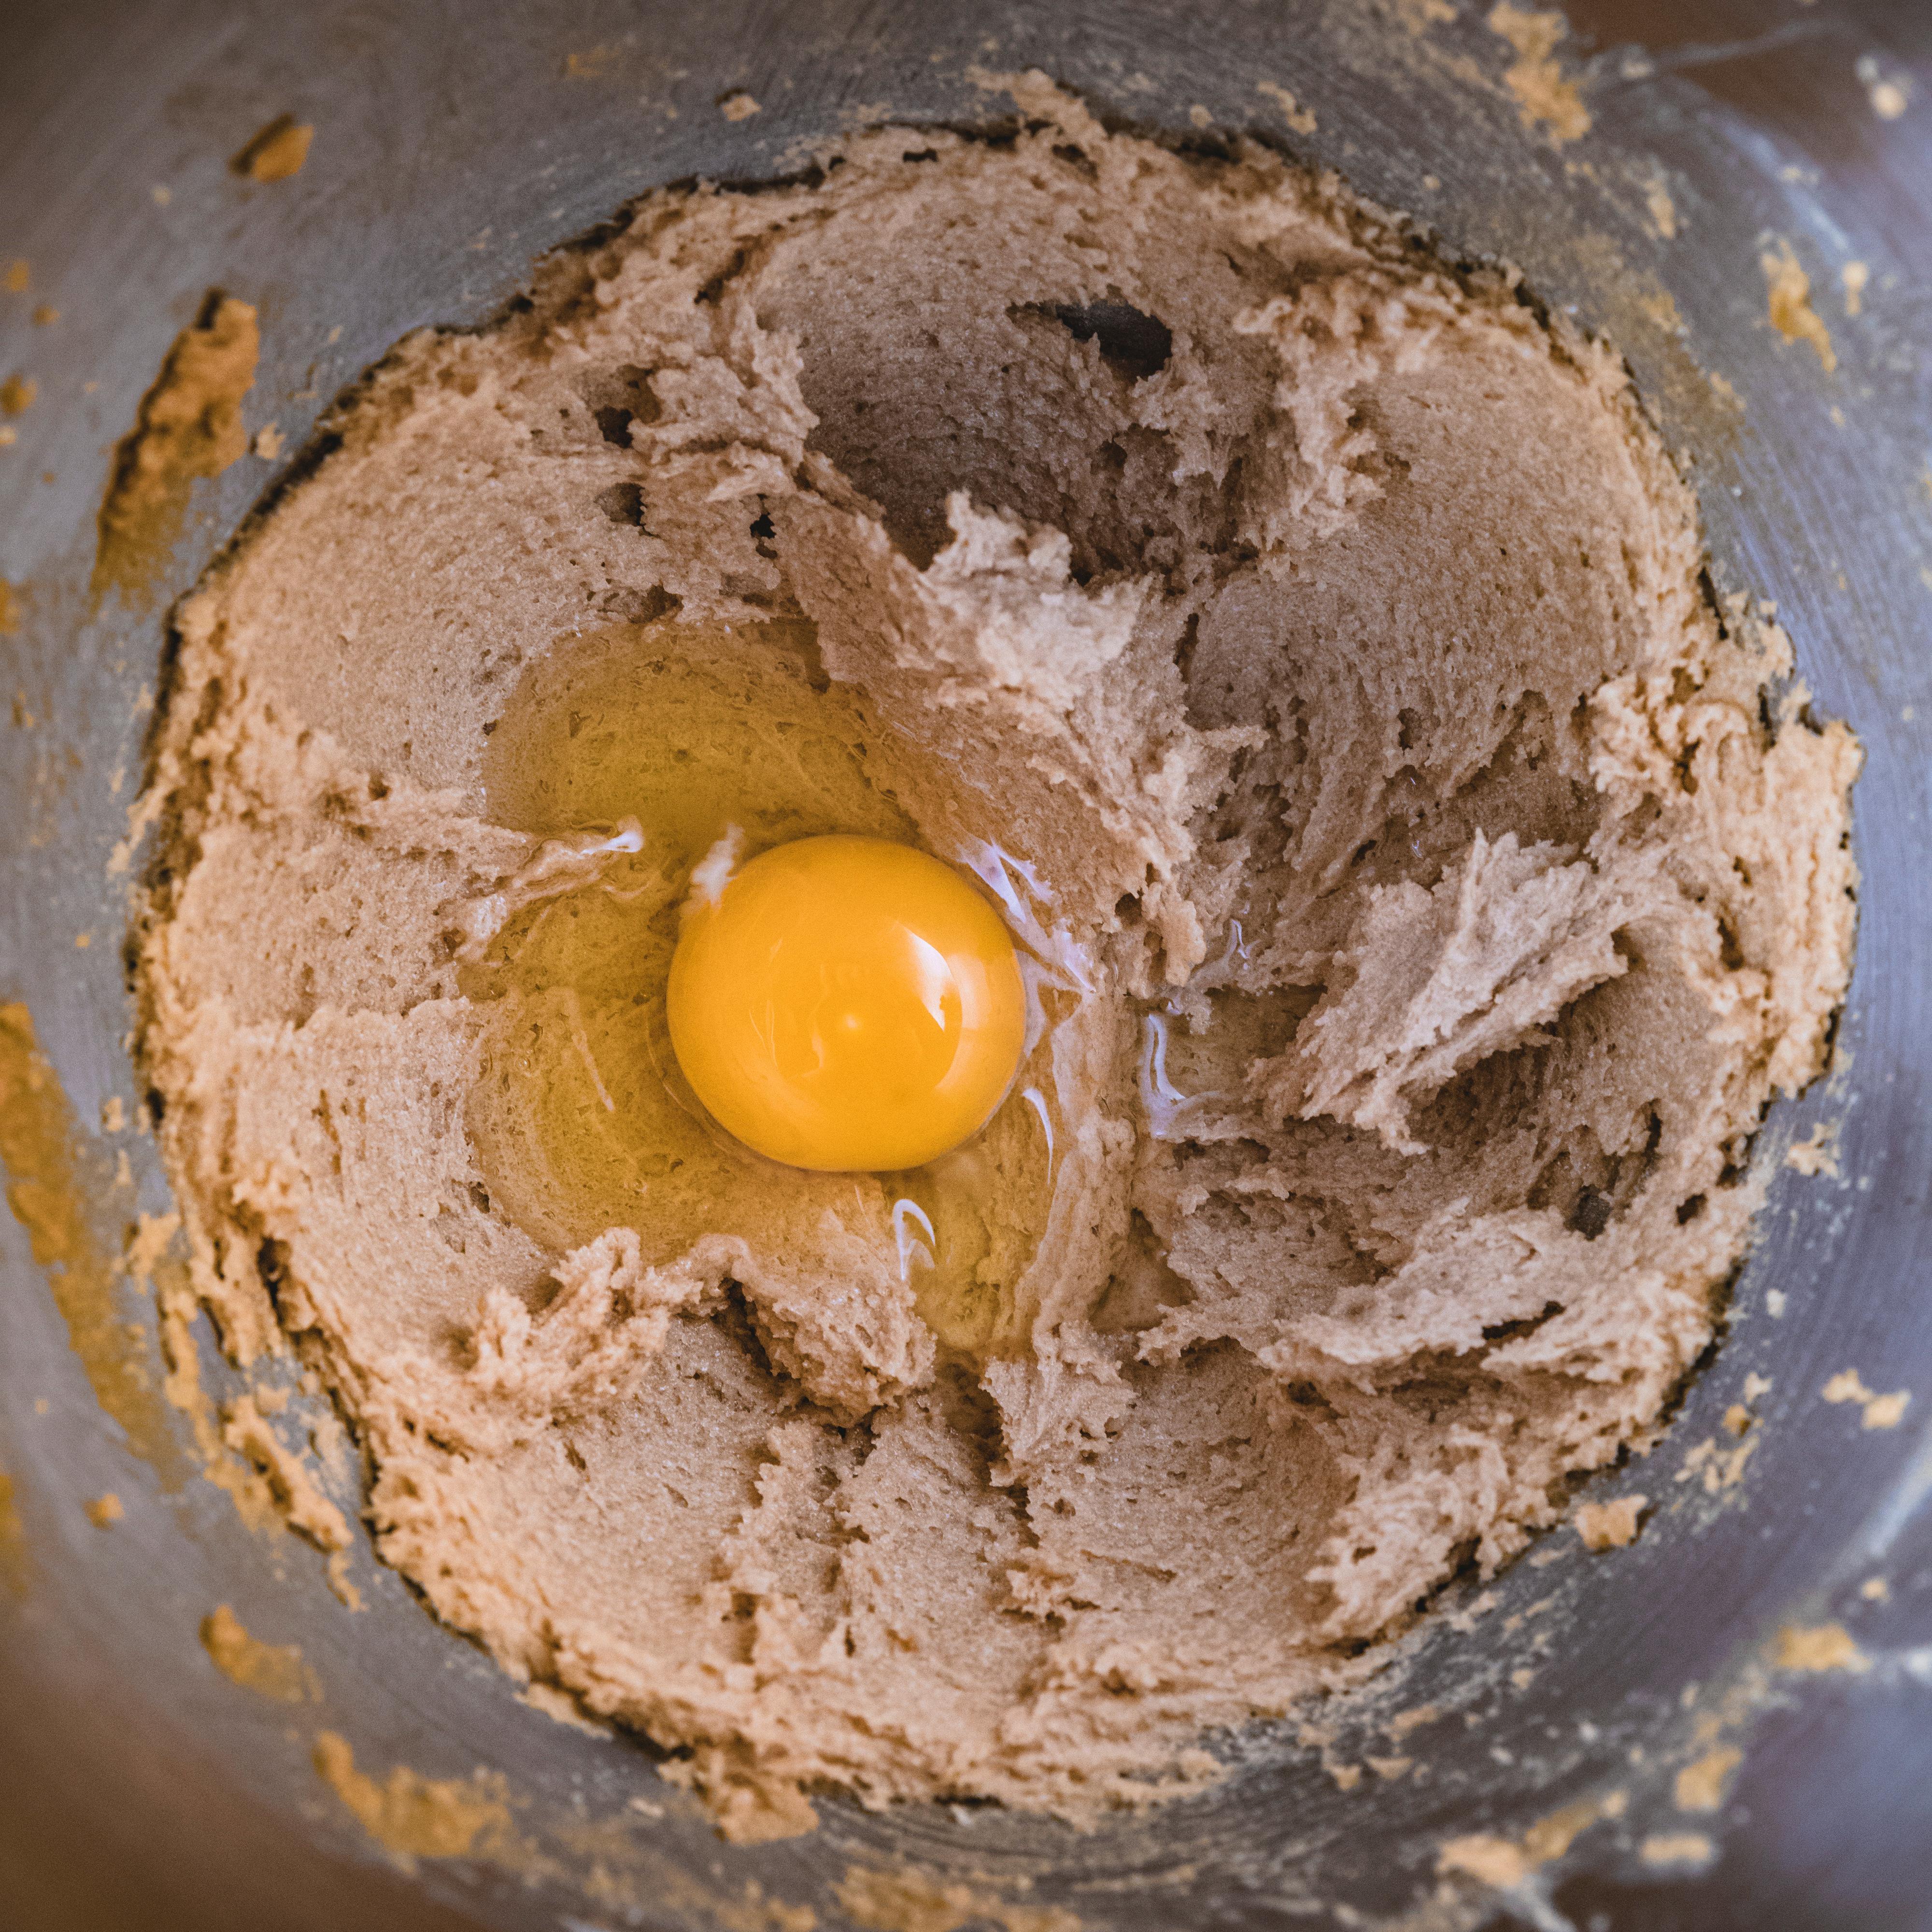 Tilsett ett og ett egg, rør egget godt inn før du tilsetter neste.